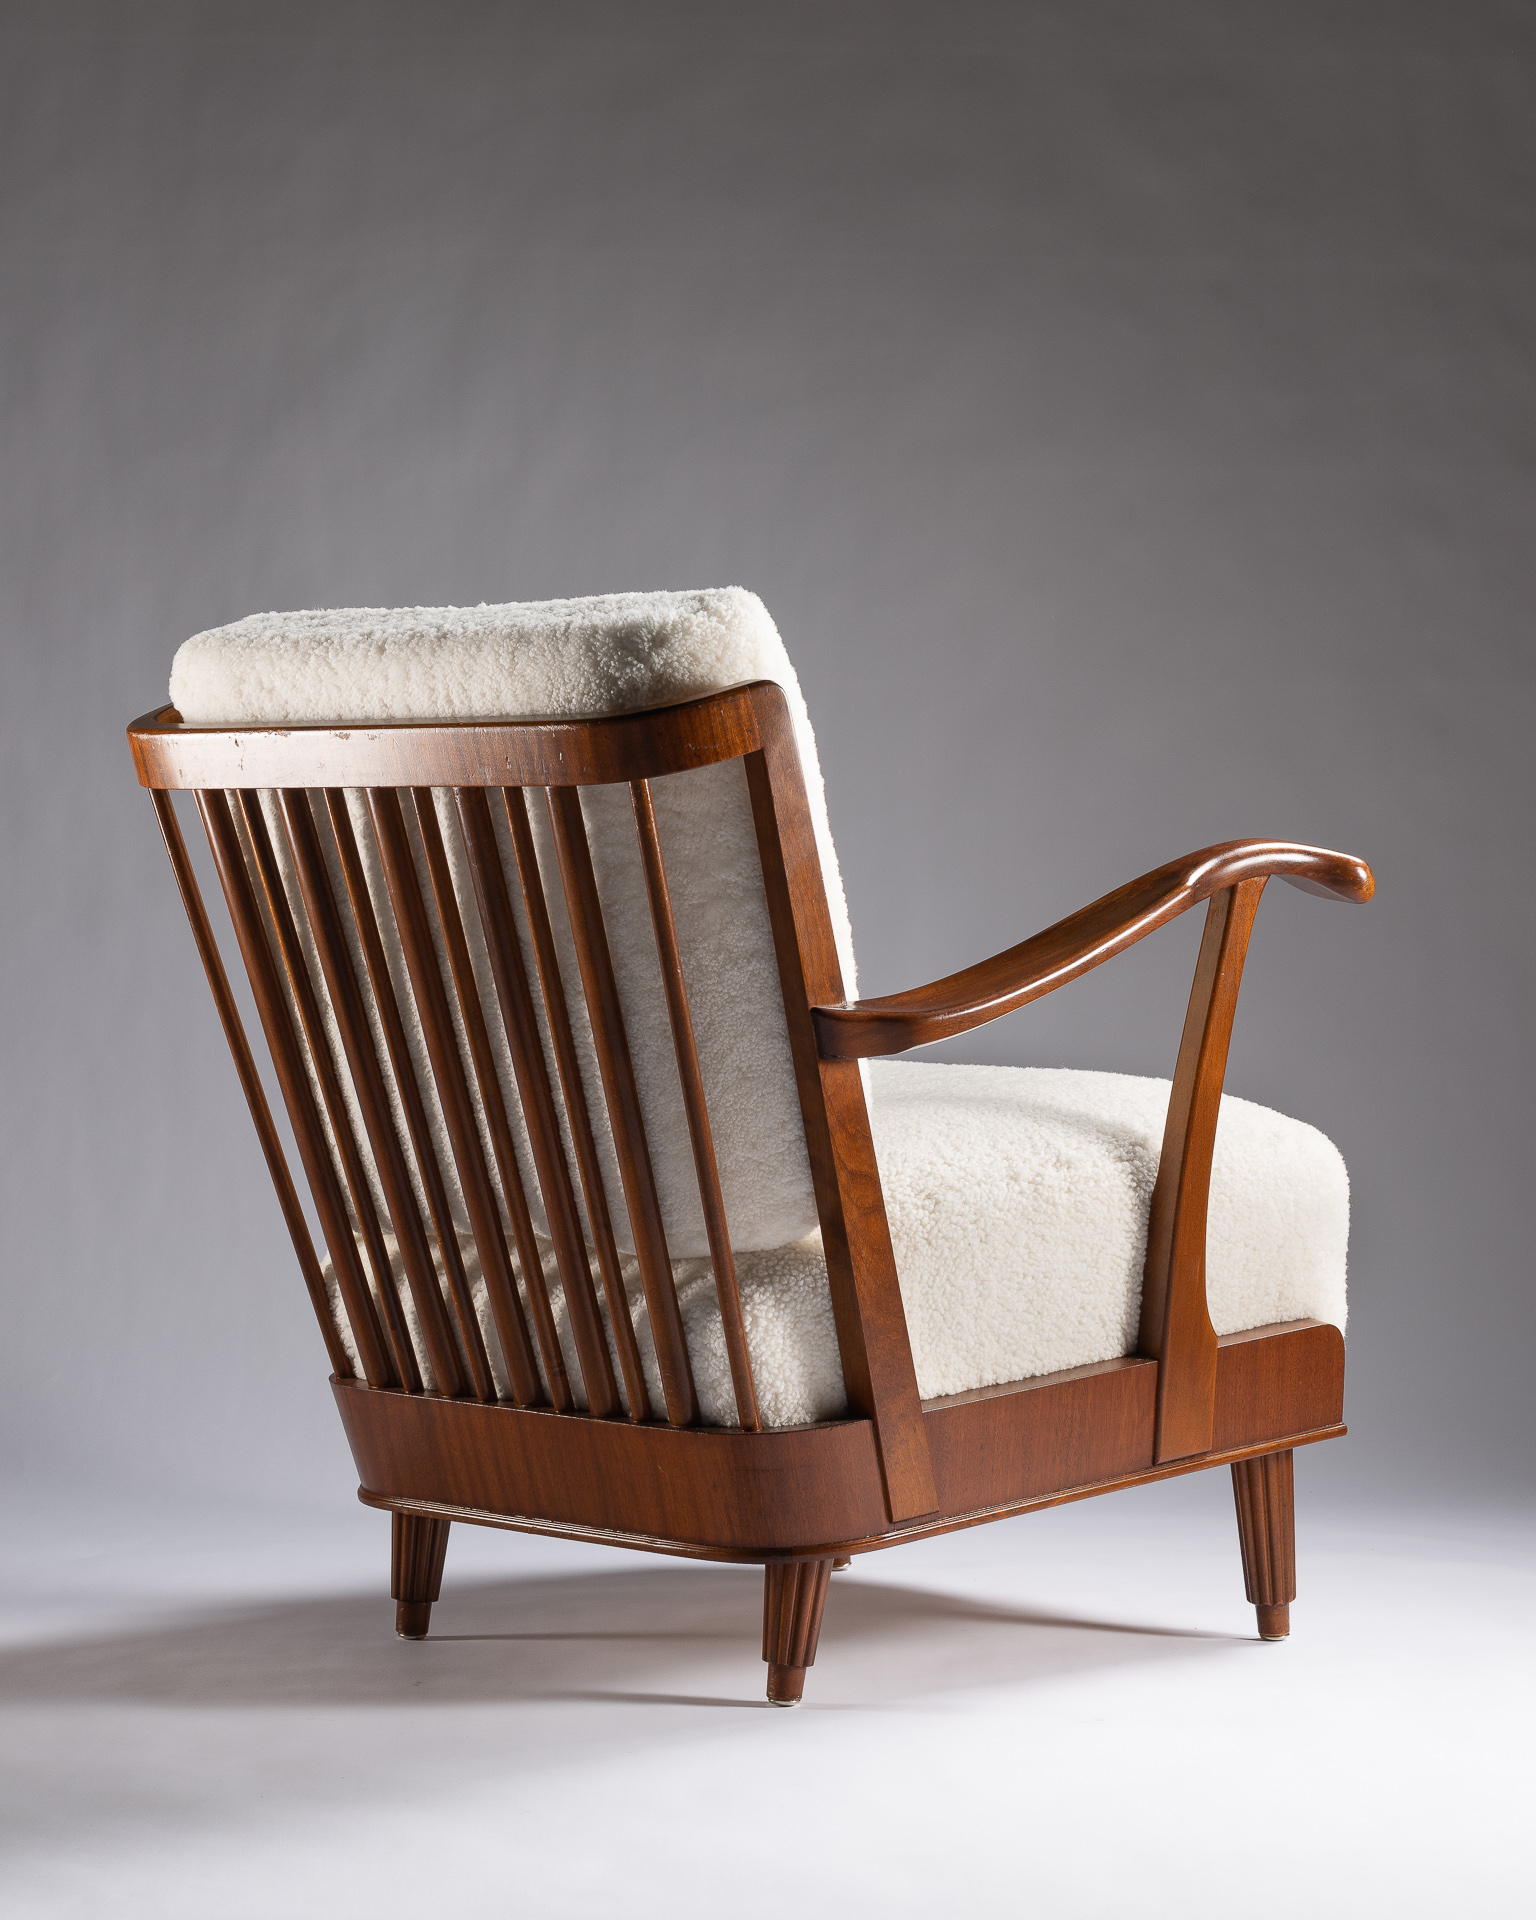 Un magnifique chalet de Courchevel accueille ce fauteuil Svante Skogh tapissé de mouton blanc